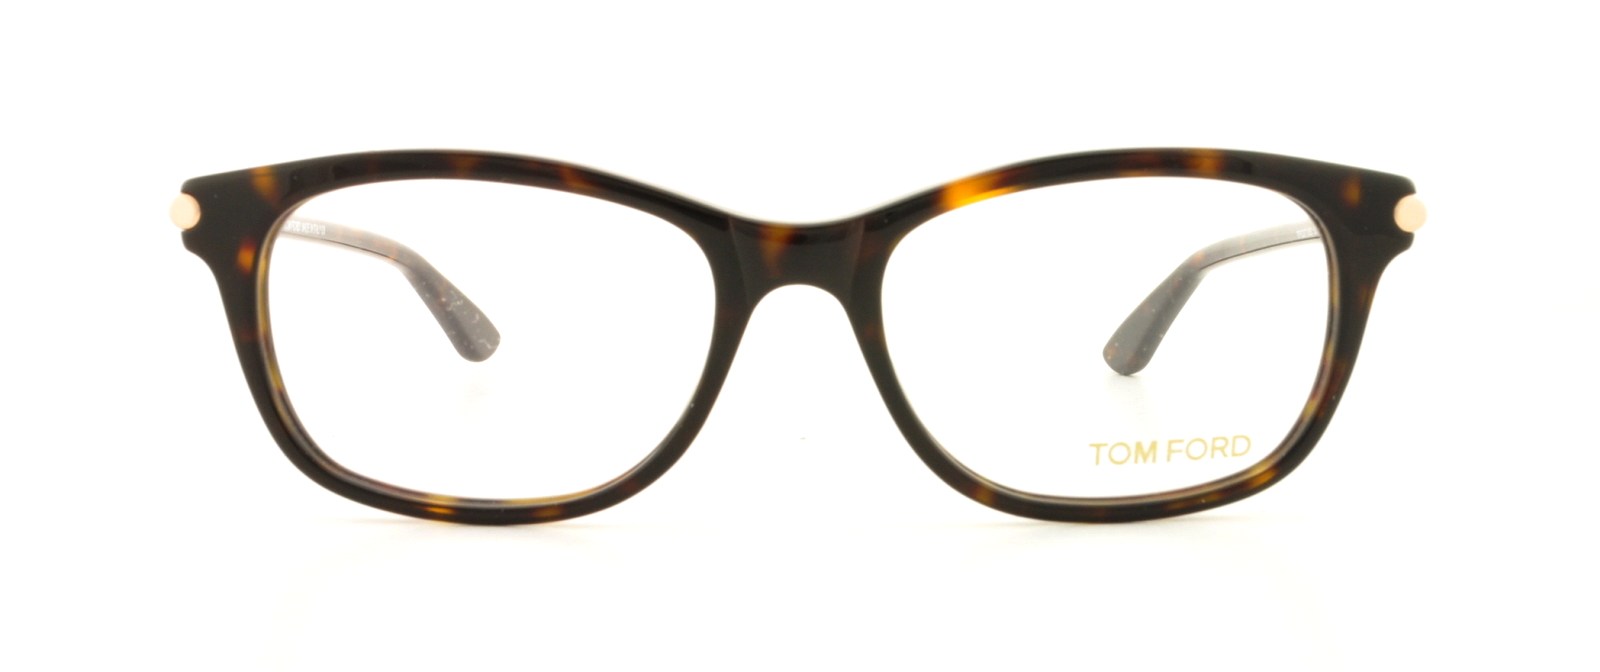 Designer Frames Outlet. Tom Ford Eyeglasses FT5237